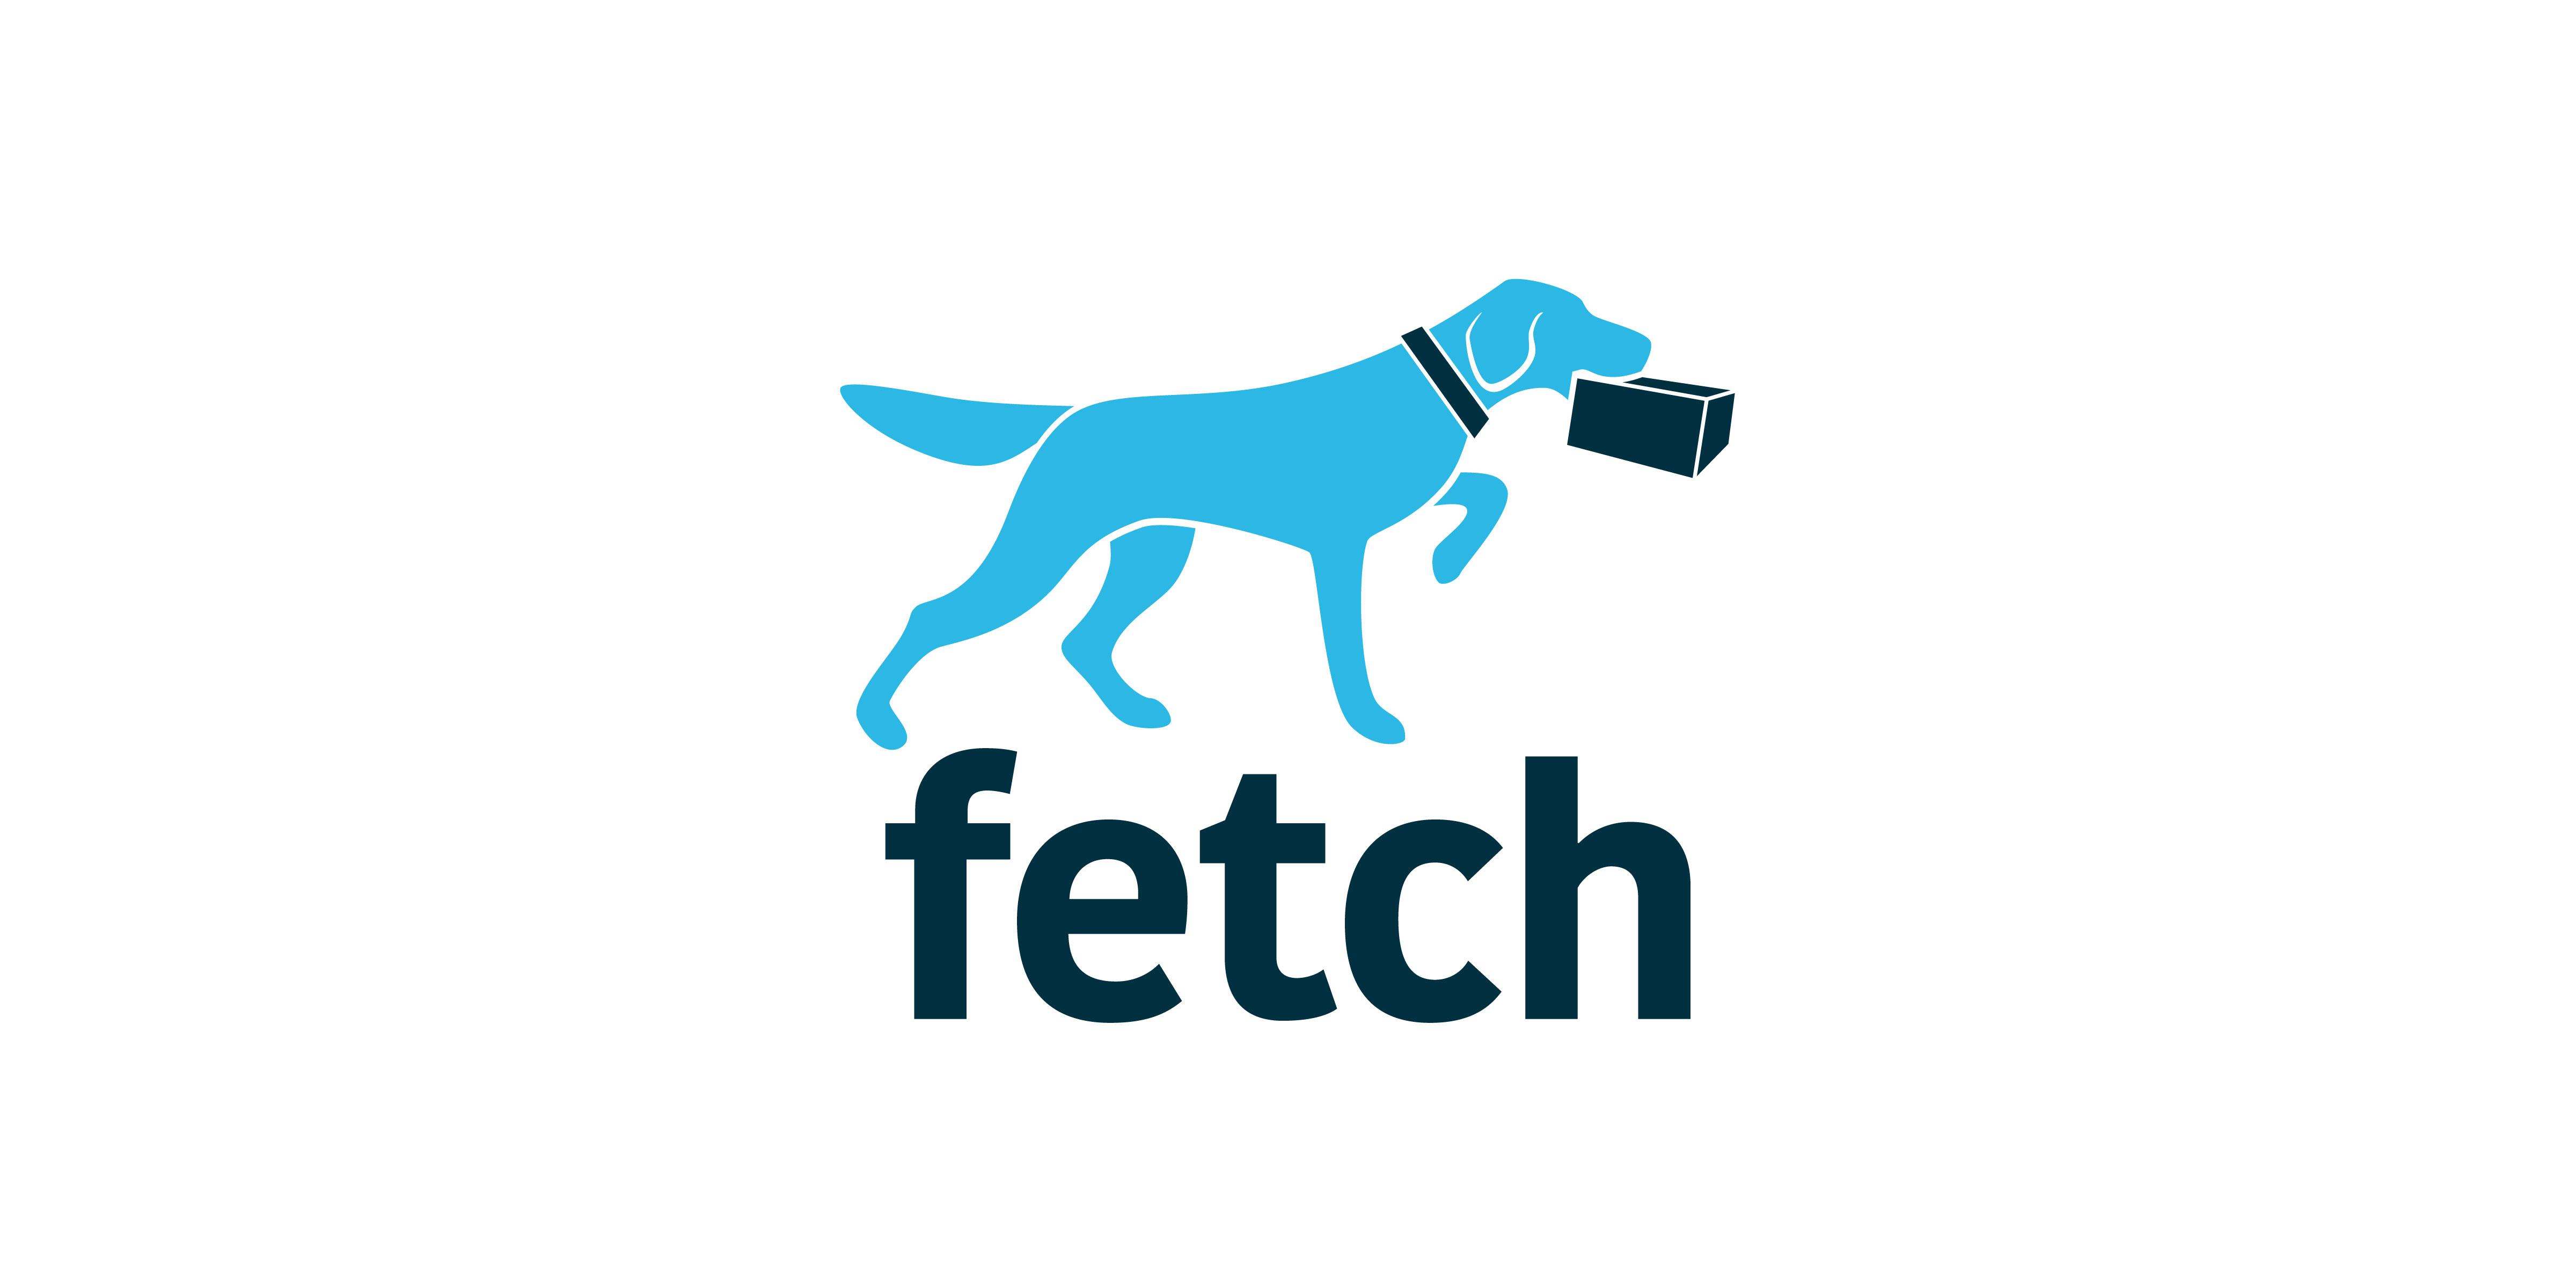 Fetch. To fetch. Fetch фото. Fetch deliver.